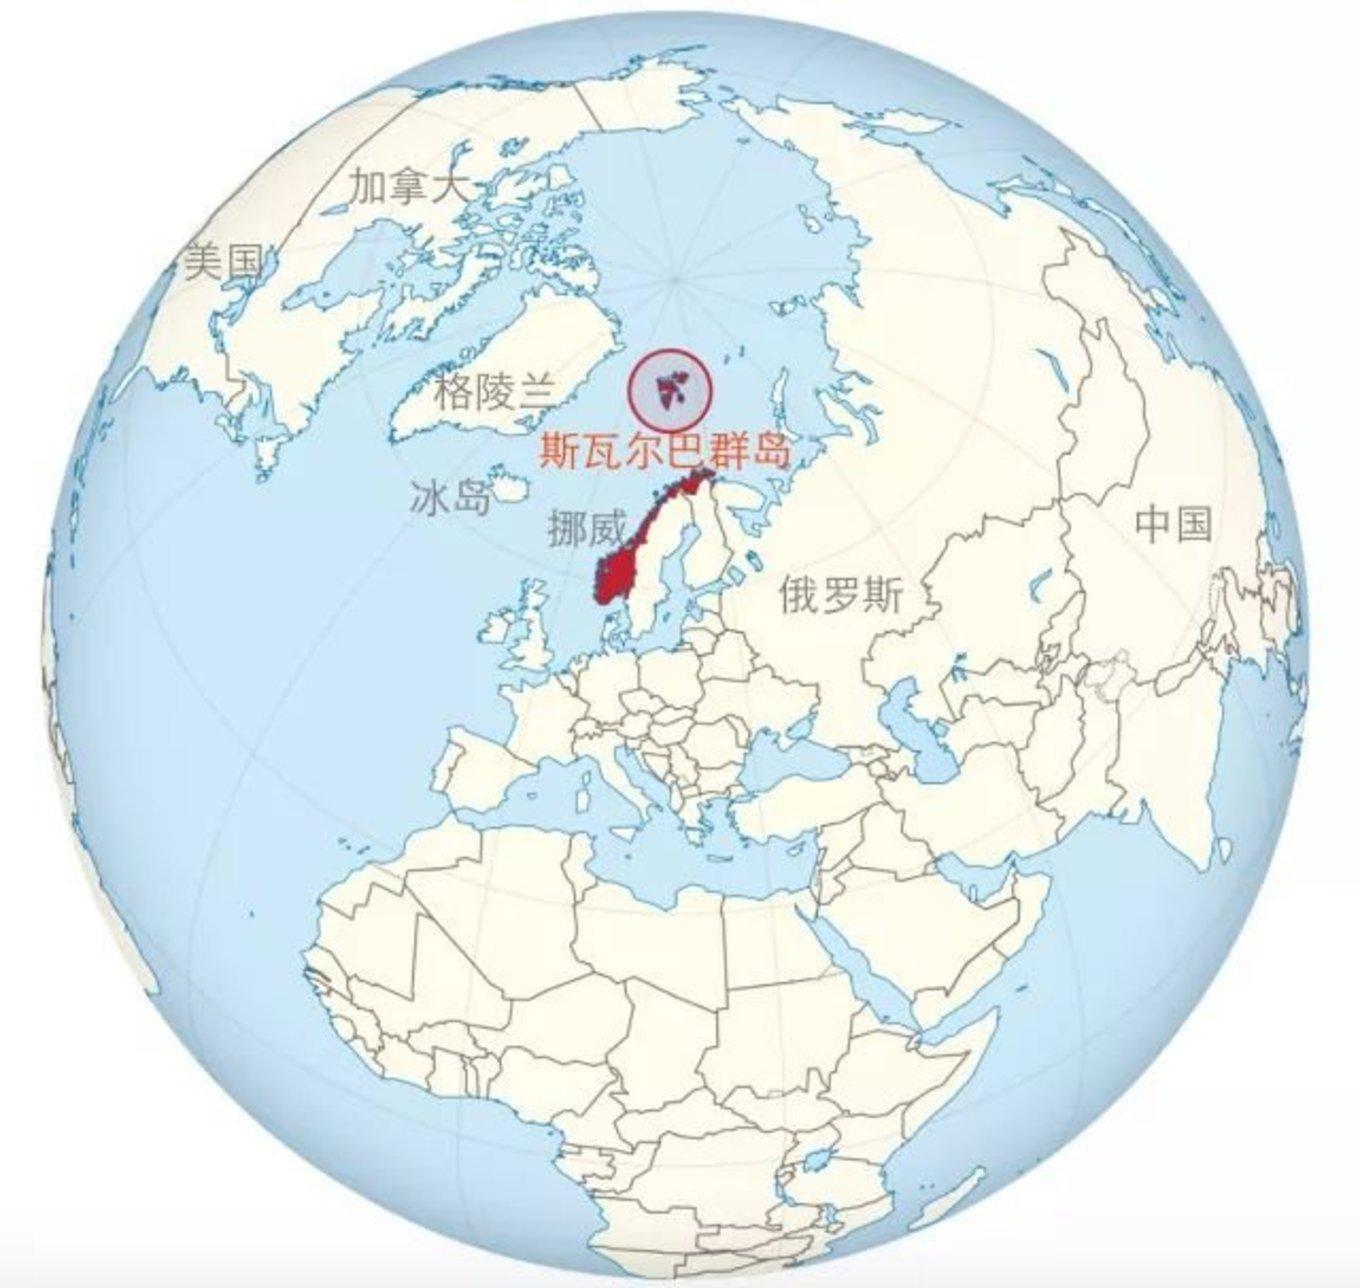 为什么在北极圈里会有一块中国海外飞地